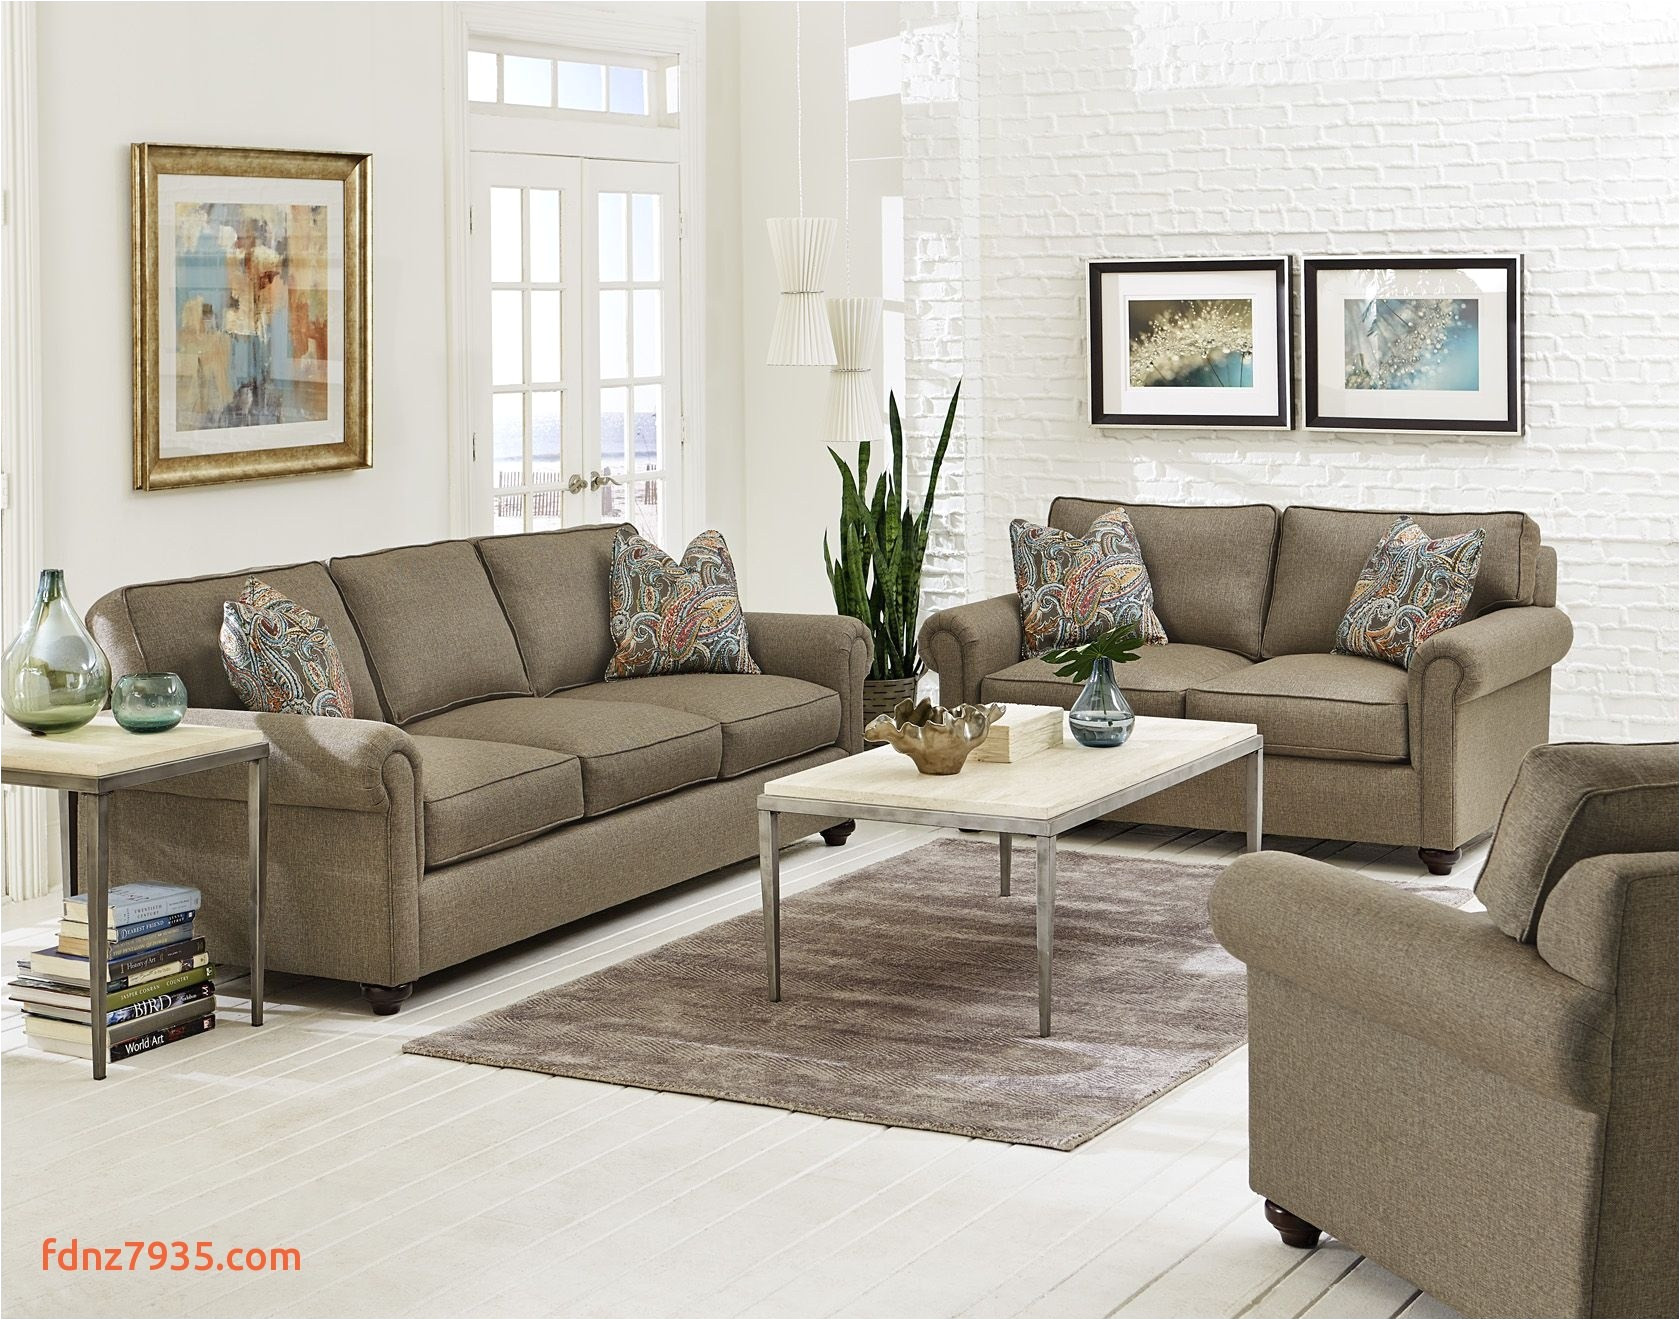 England Furniture Reviews 2019 England sofa Sectional Fresh sofa Design